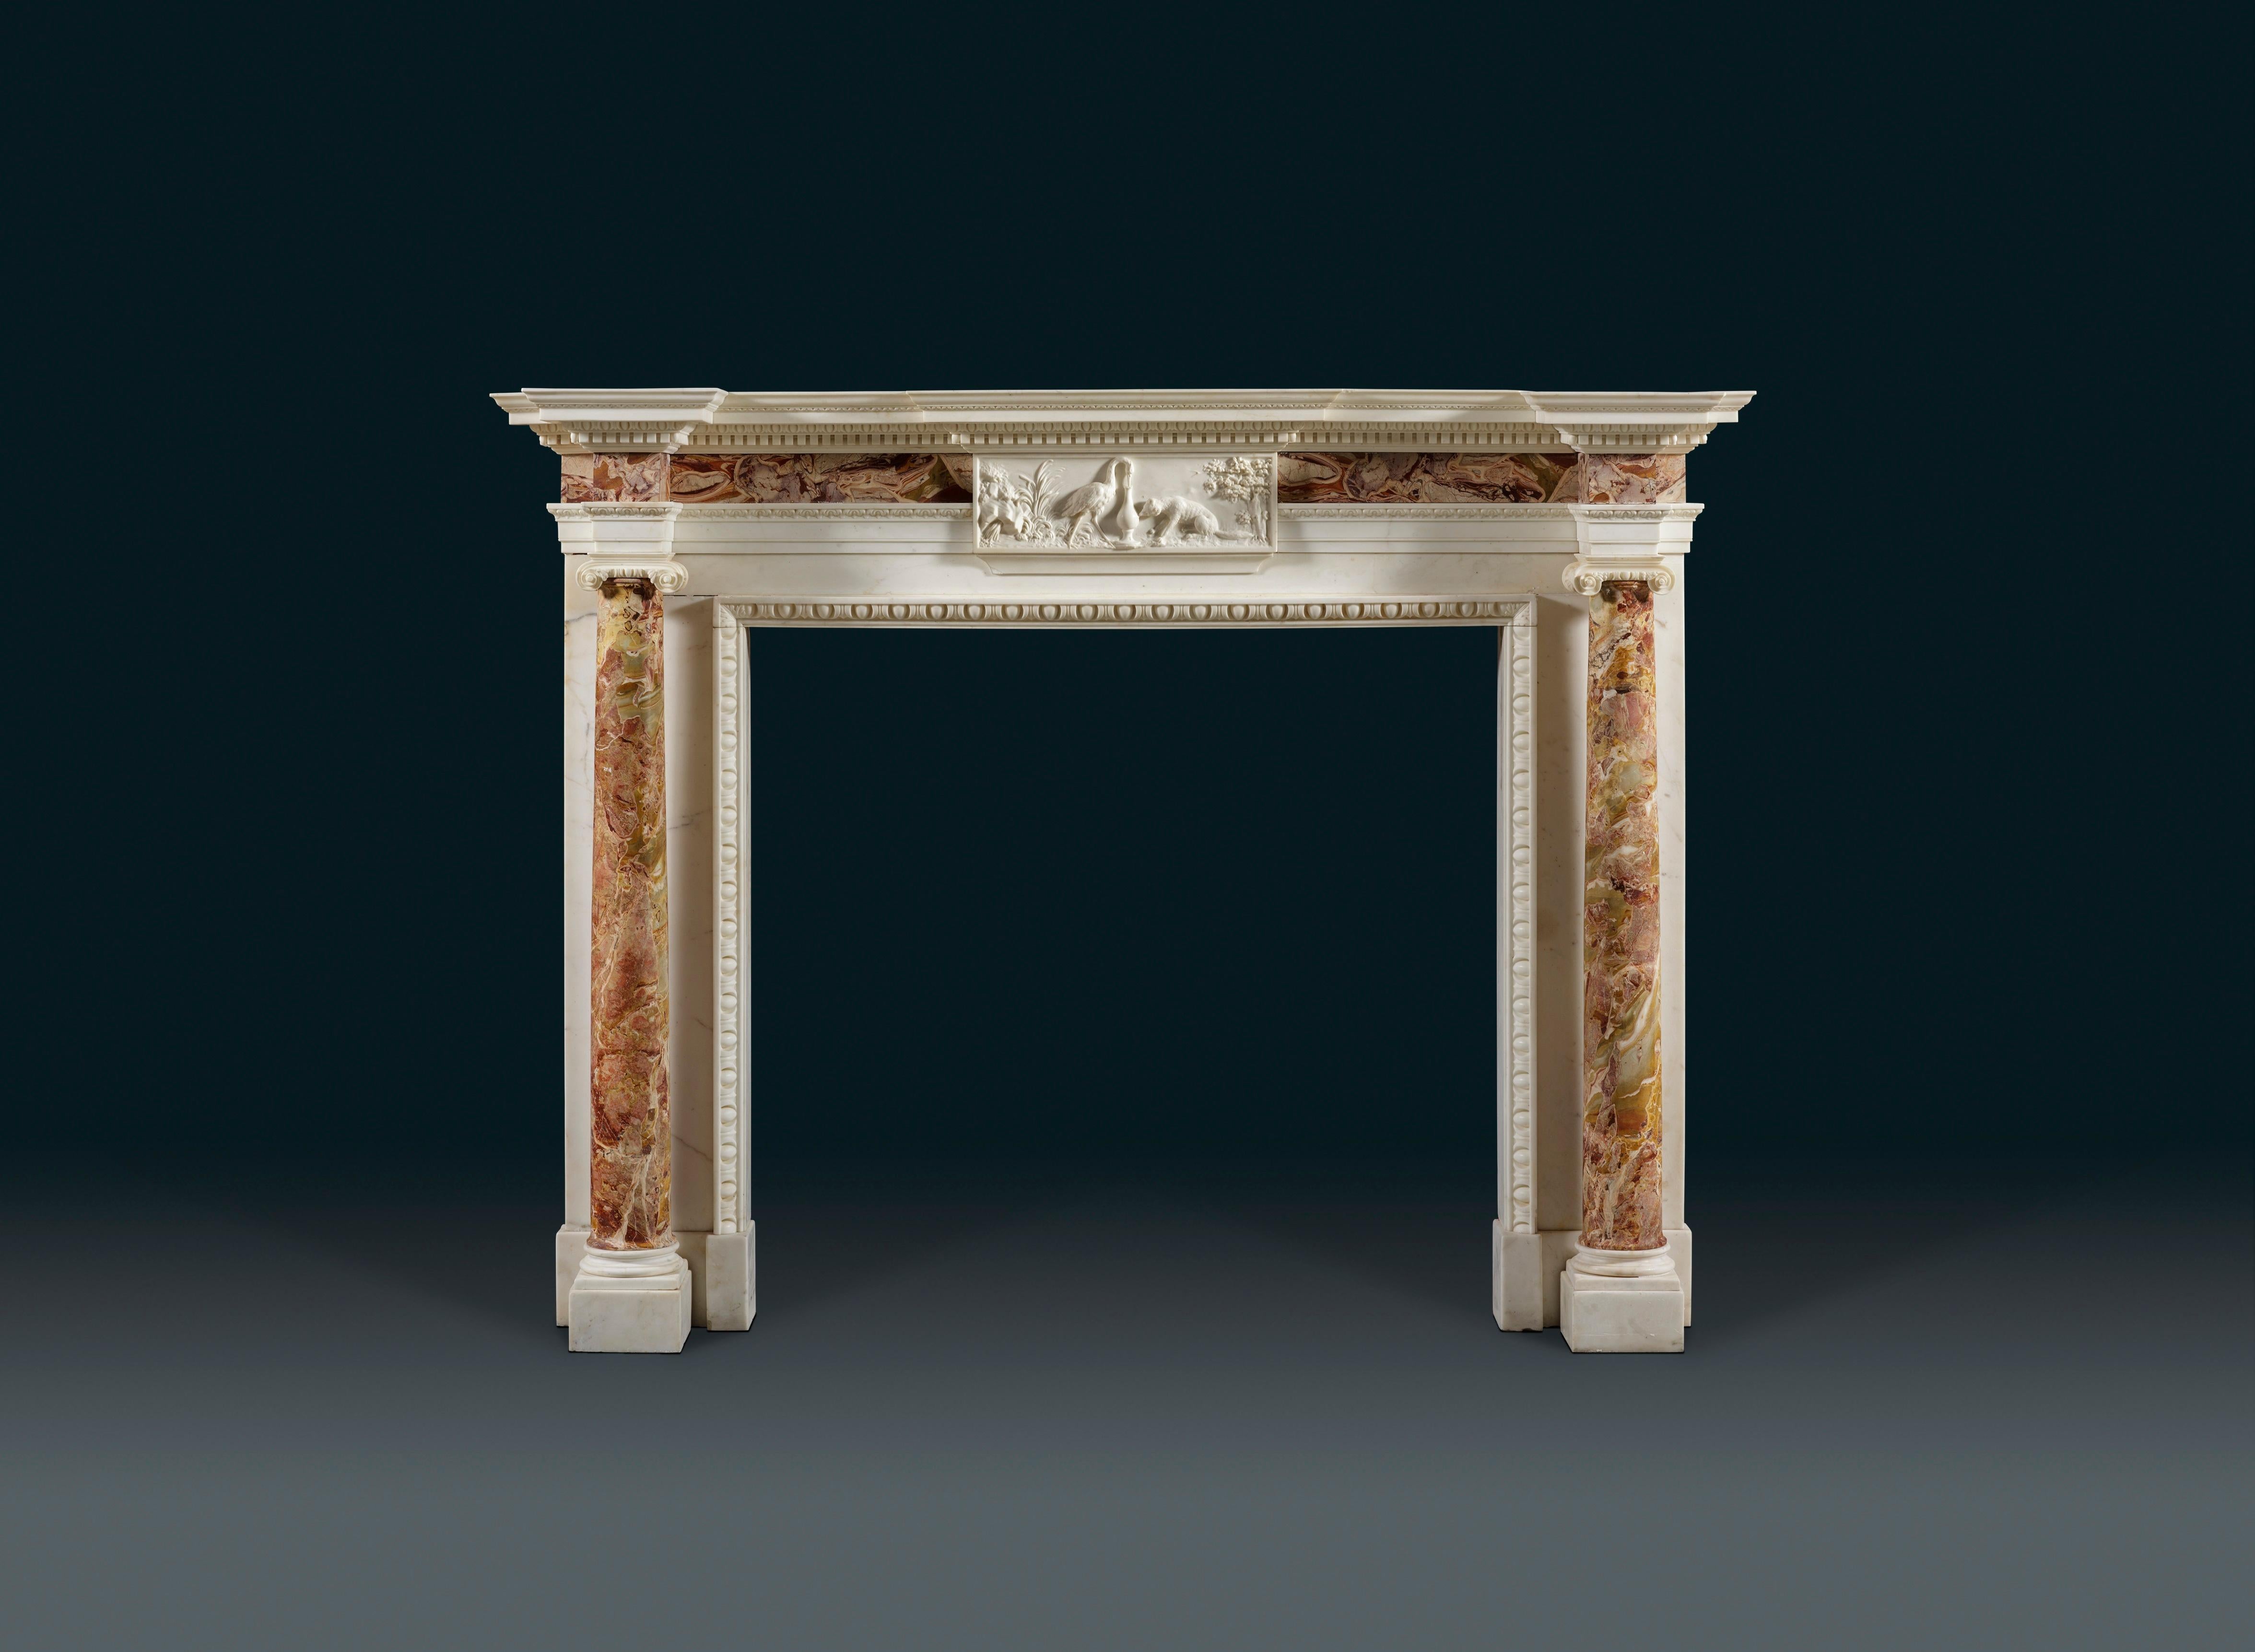 Cheminée du milieu du XVIIIe siècle, de style George II, en statuaire blanc et marbre jaspe de Sicile, réalisée par Thomas Carter I, (1702-1756). Les jambages sont en forme de colonnes arrondies en jaspe, la frise est ornée d'une tablette centrale